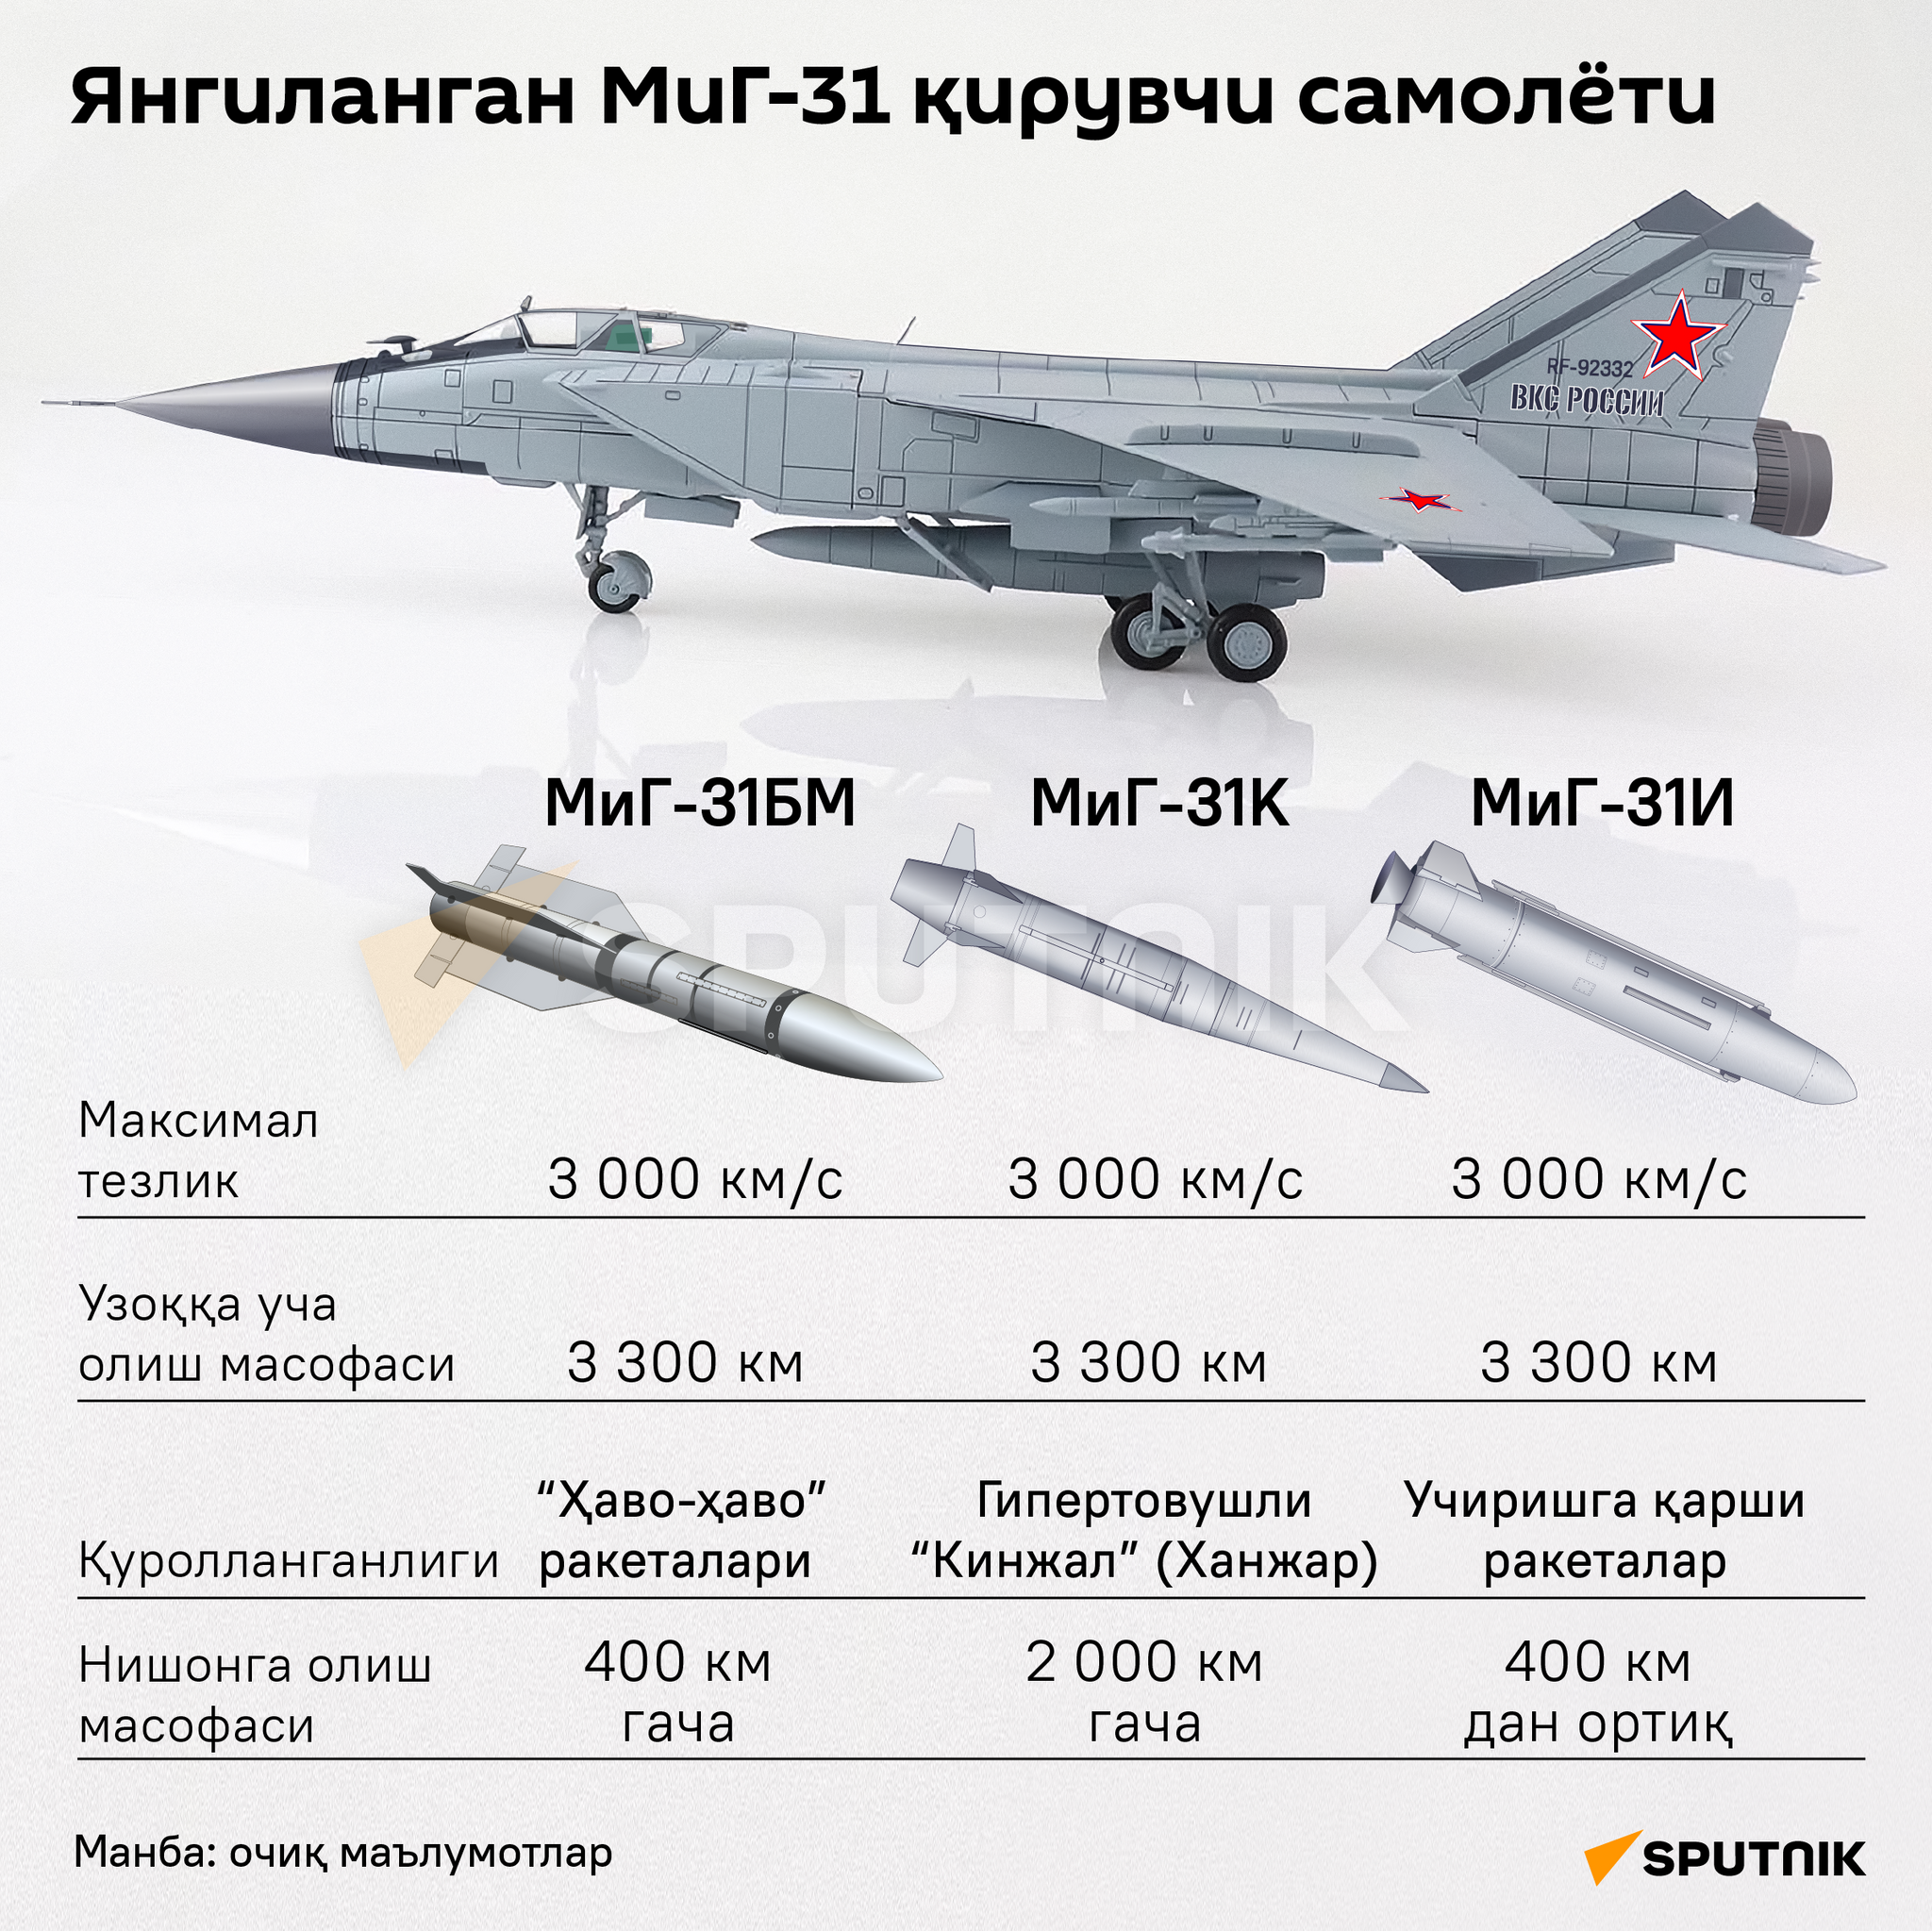 Модернизация тяжелого истребителя МиГ-31 инфографика узб - Sputnik Ўзбекистон